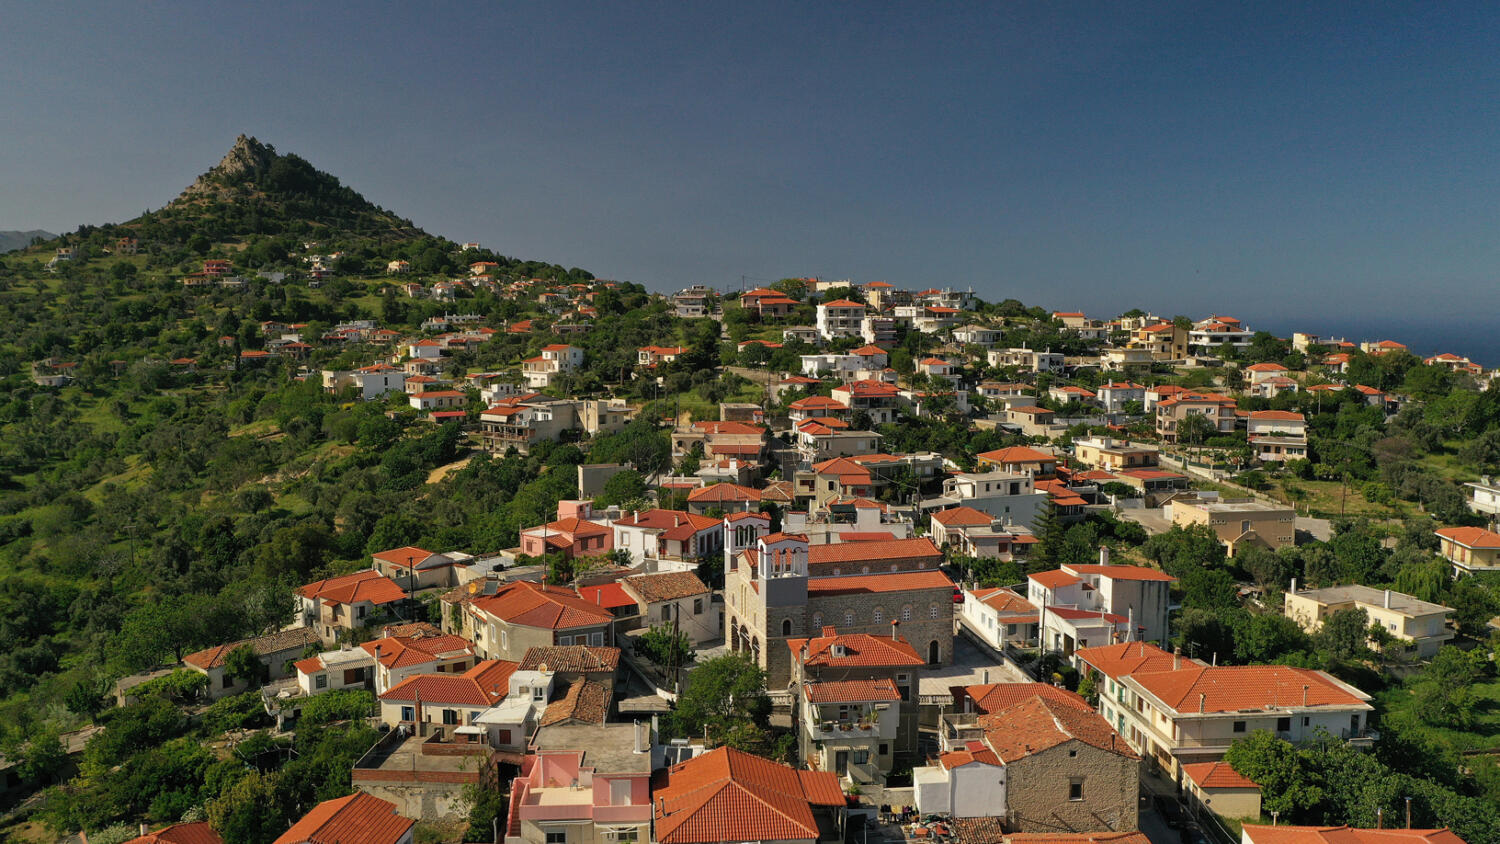 Χωριό Οξύλιθος. Φωτογραφία: ©Βασίλης Συκάς, για τον Δήμο Κύμης-Αλιβερίου